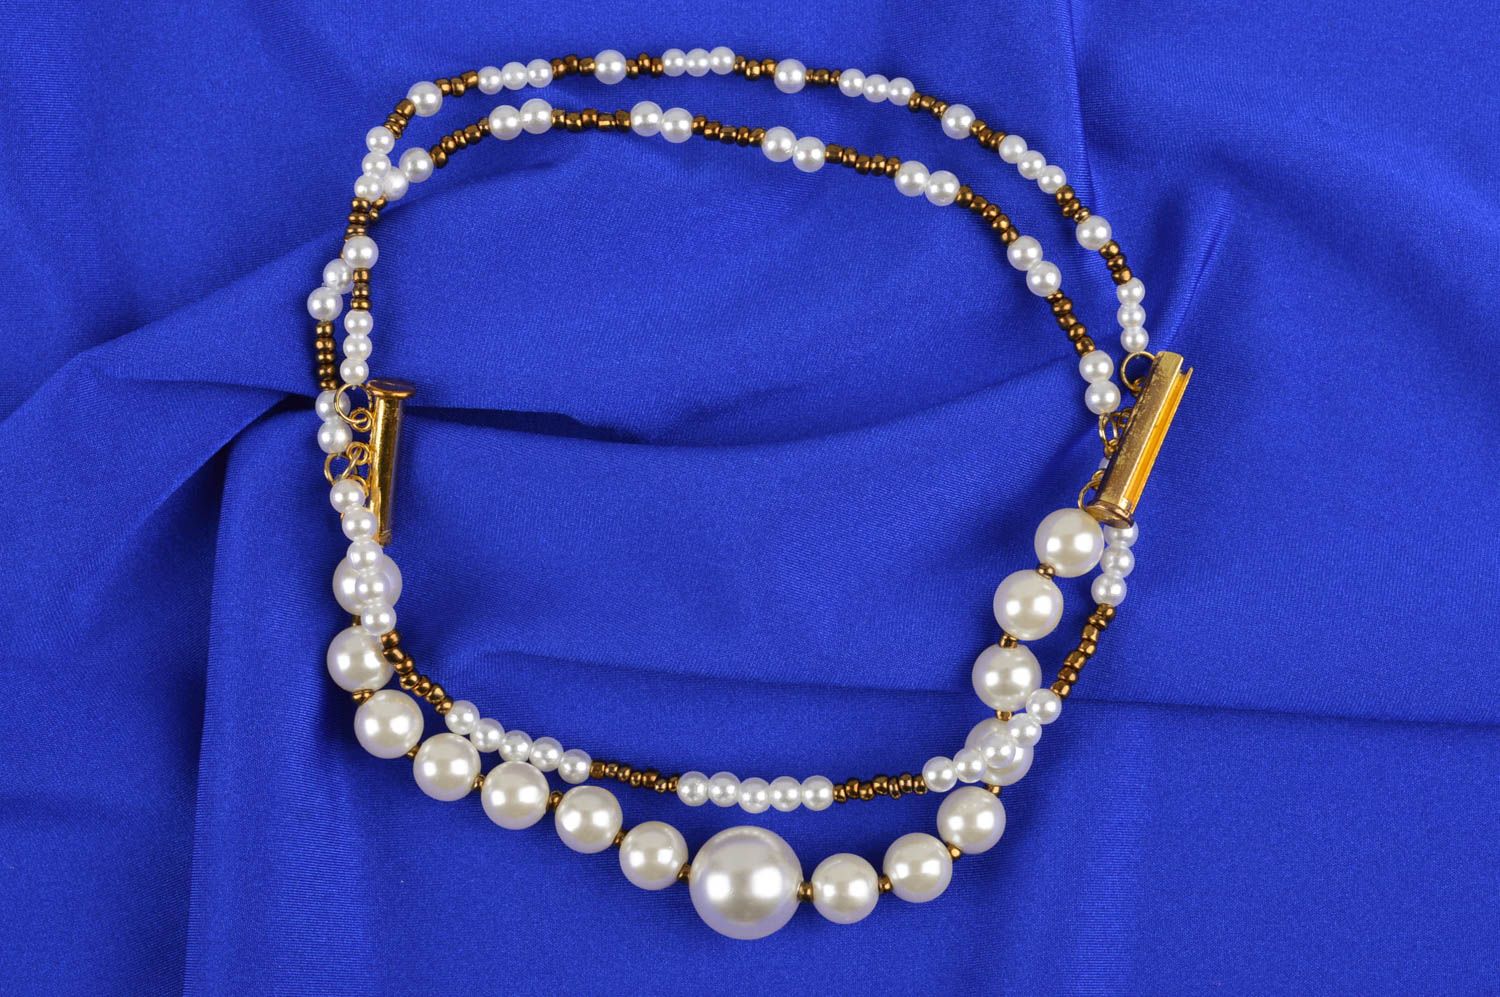 Armband handmade Schmuck aus Perlen Frauen Accessoire Armband weiß goldfarbig foto 1